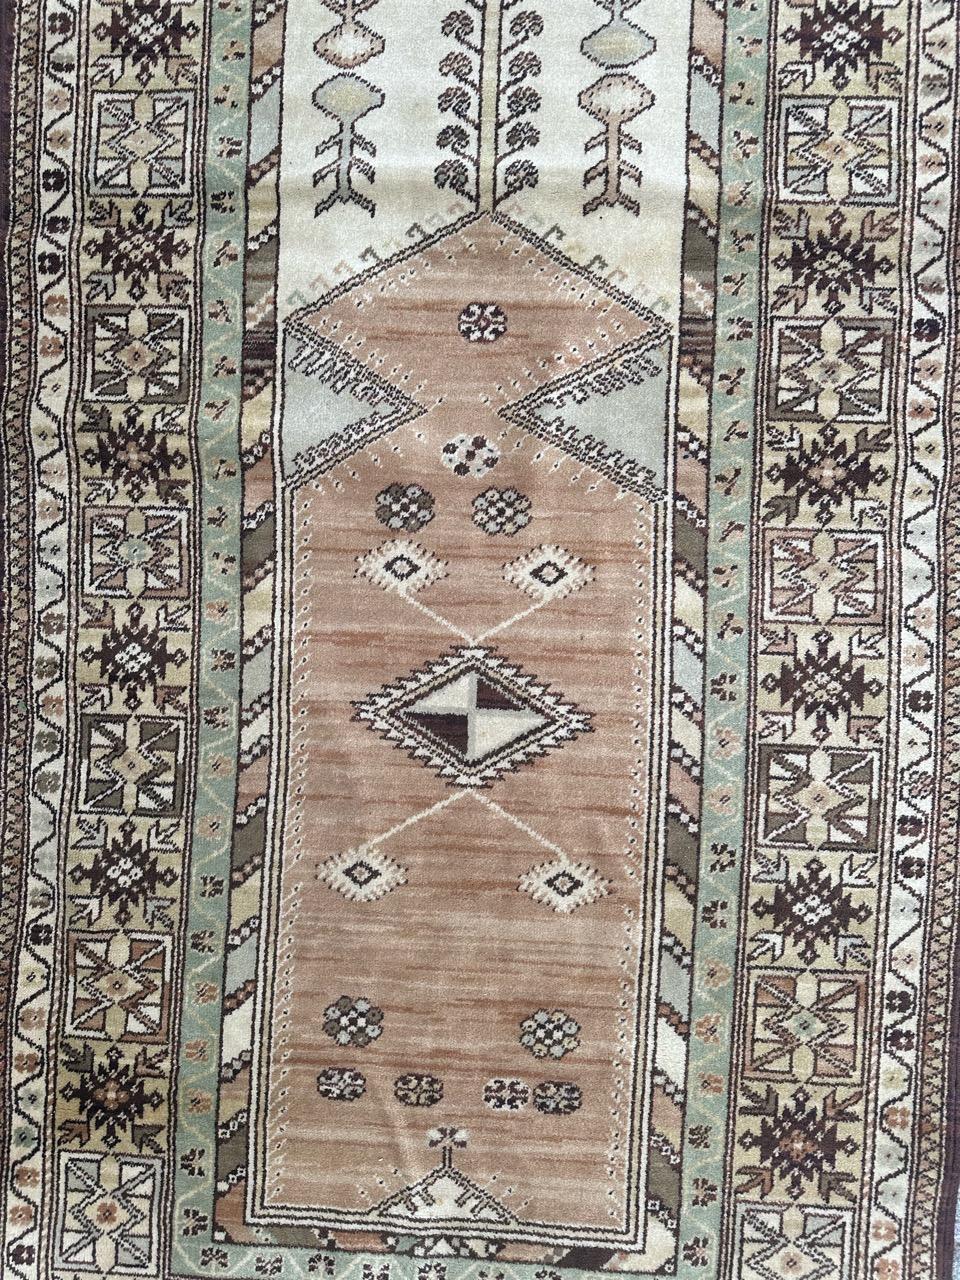 Joli tapis vintage de style turc avec un design géométrique et de jolies couleurs claires, fabriqué avec des métiers à tisser mécaniques avec de la laine sur une base de coton. 

✨✨✨
